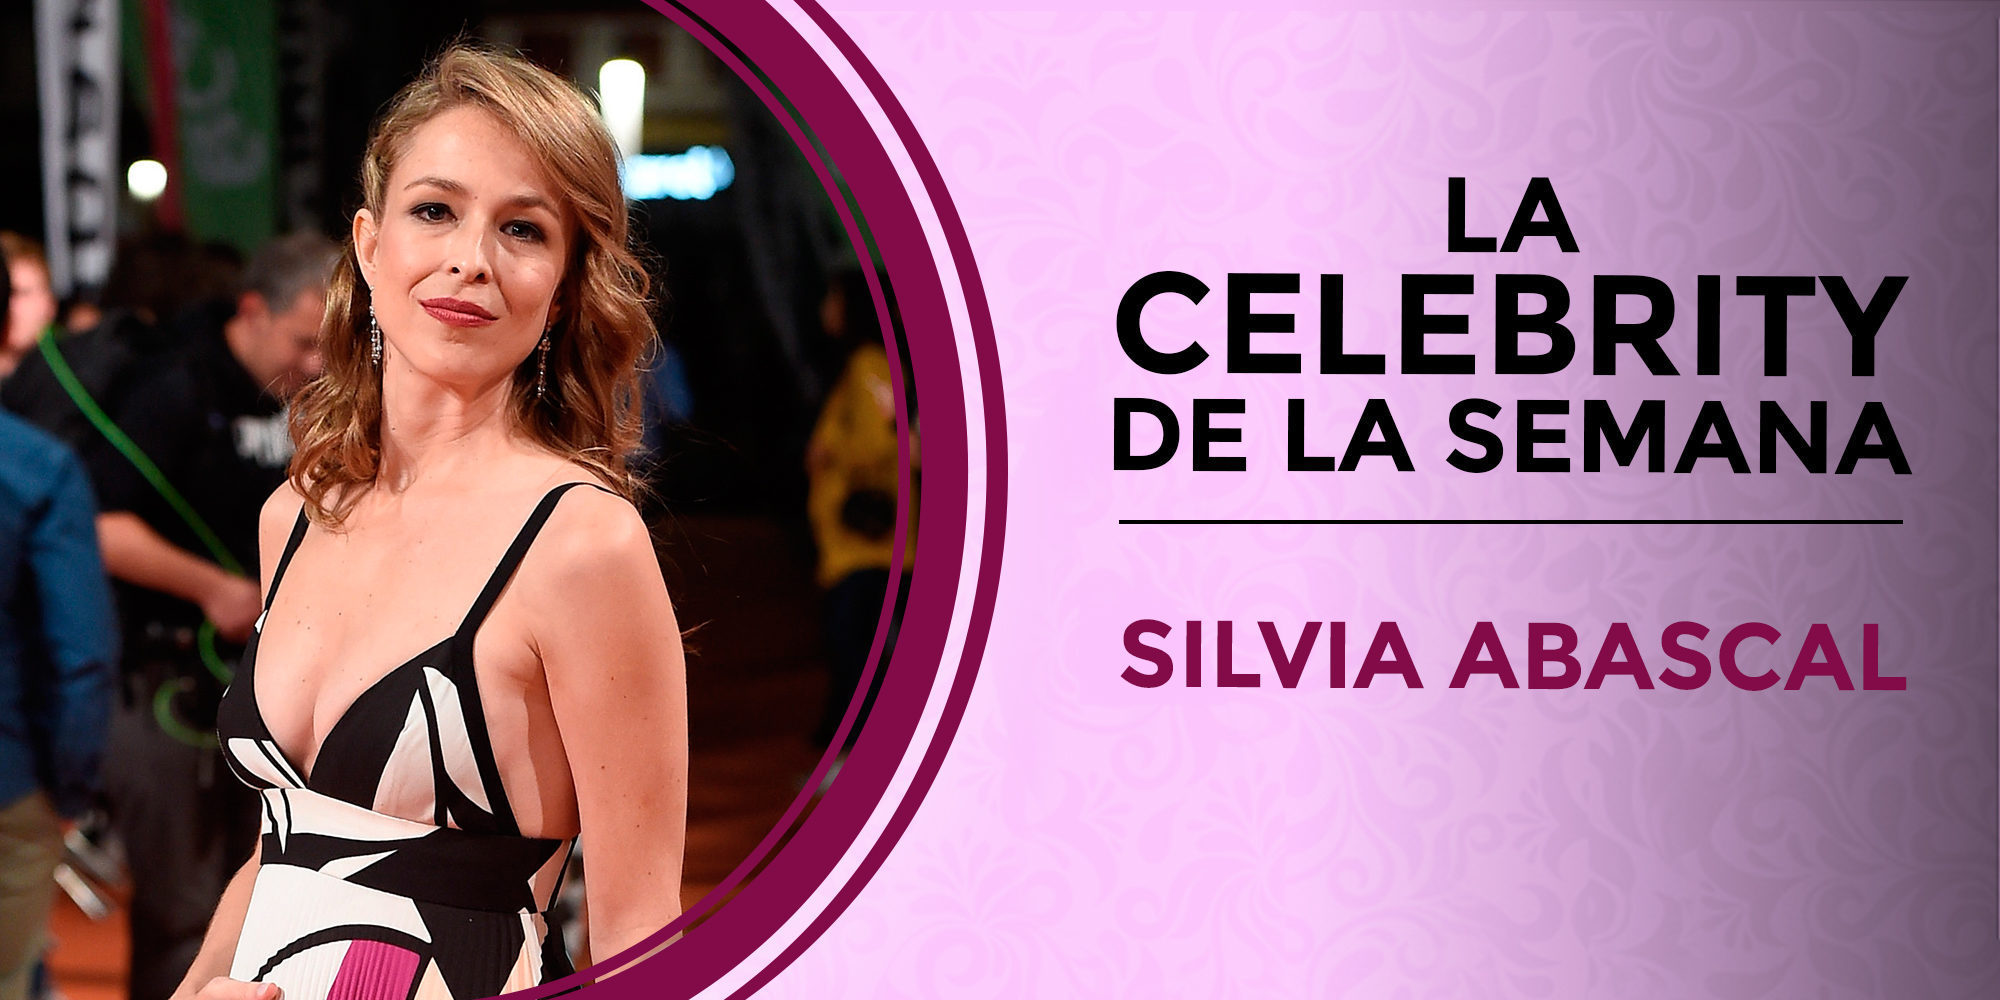 Silvia Abascal se convierte en la celebrity de la semana tras anunciar su embarazo